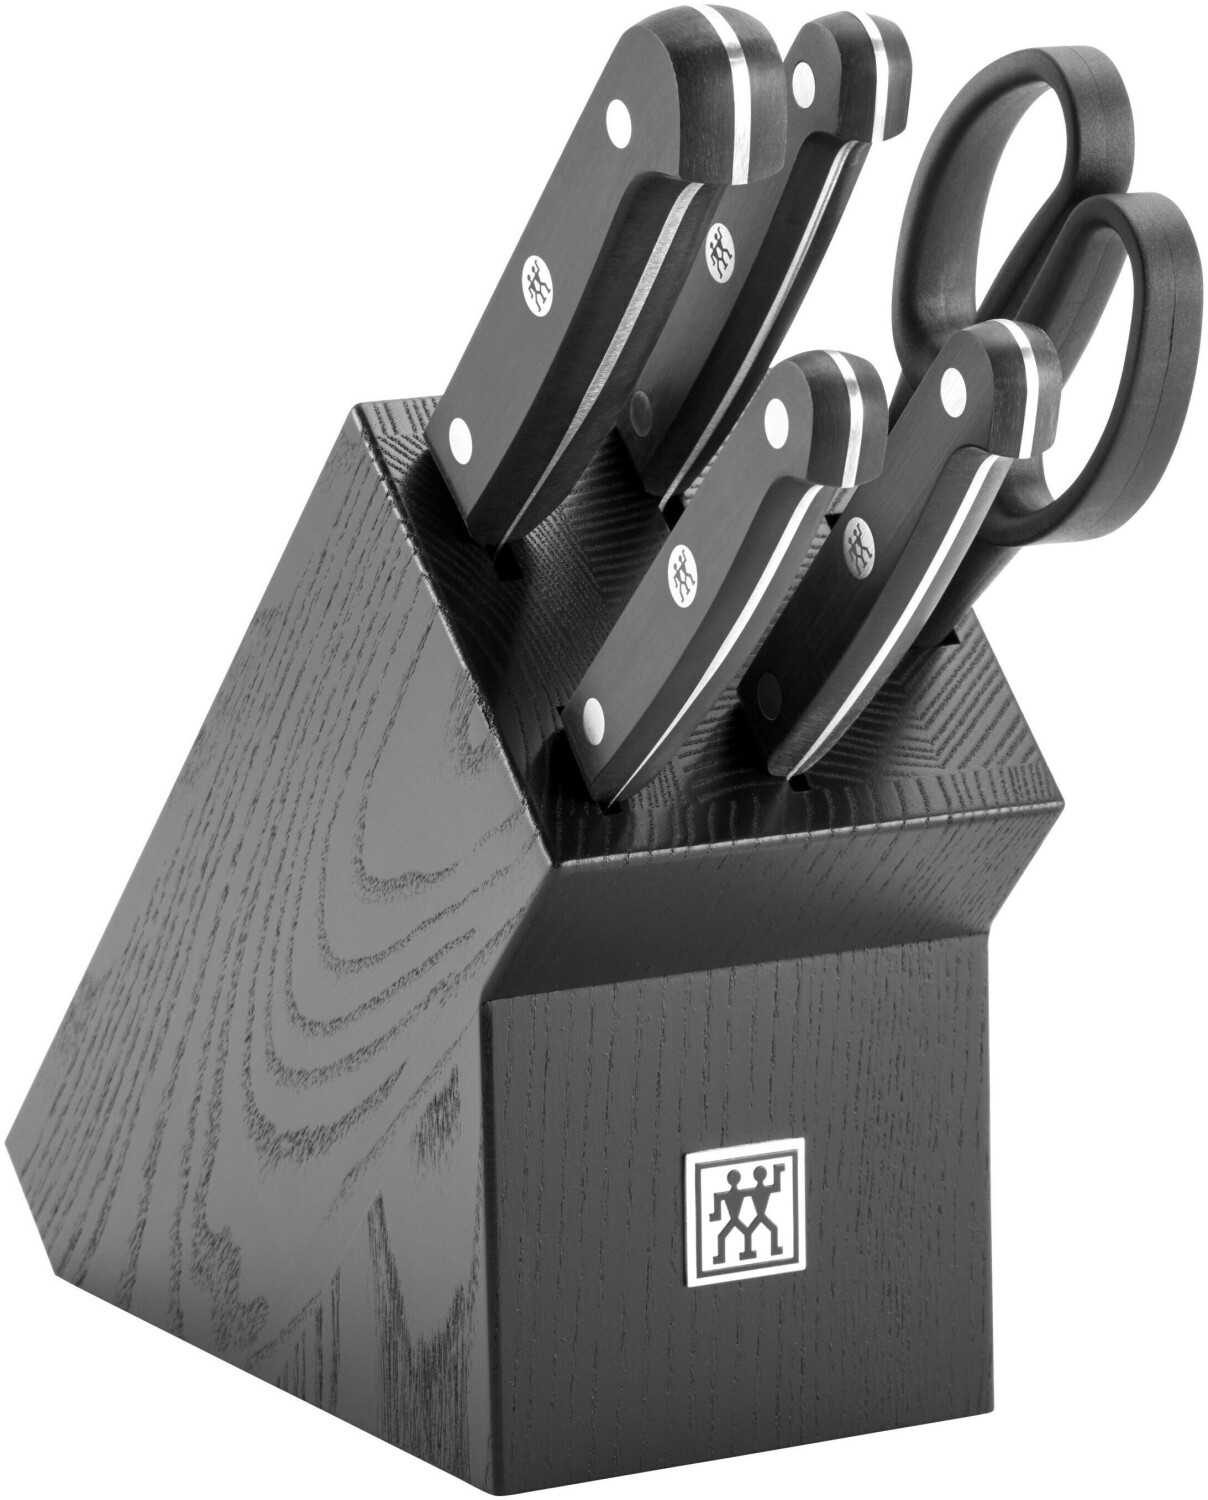 ZWILLING Gourmet Messerblockset 6-tlg. schwarz ab 209,00 € | Preisvergleich  bei